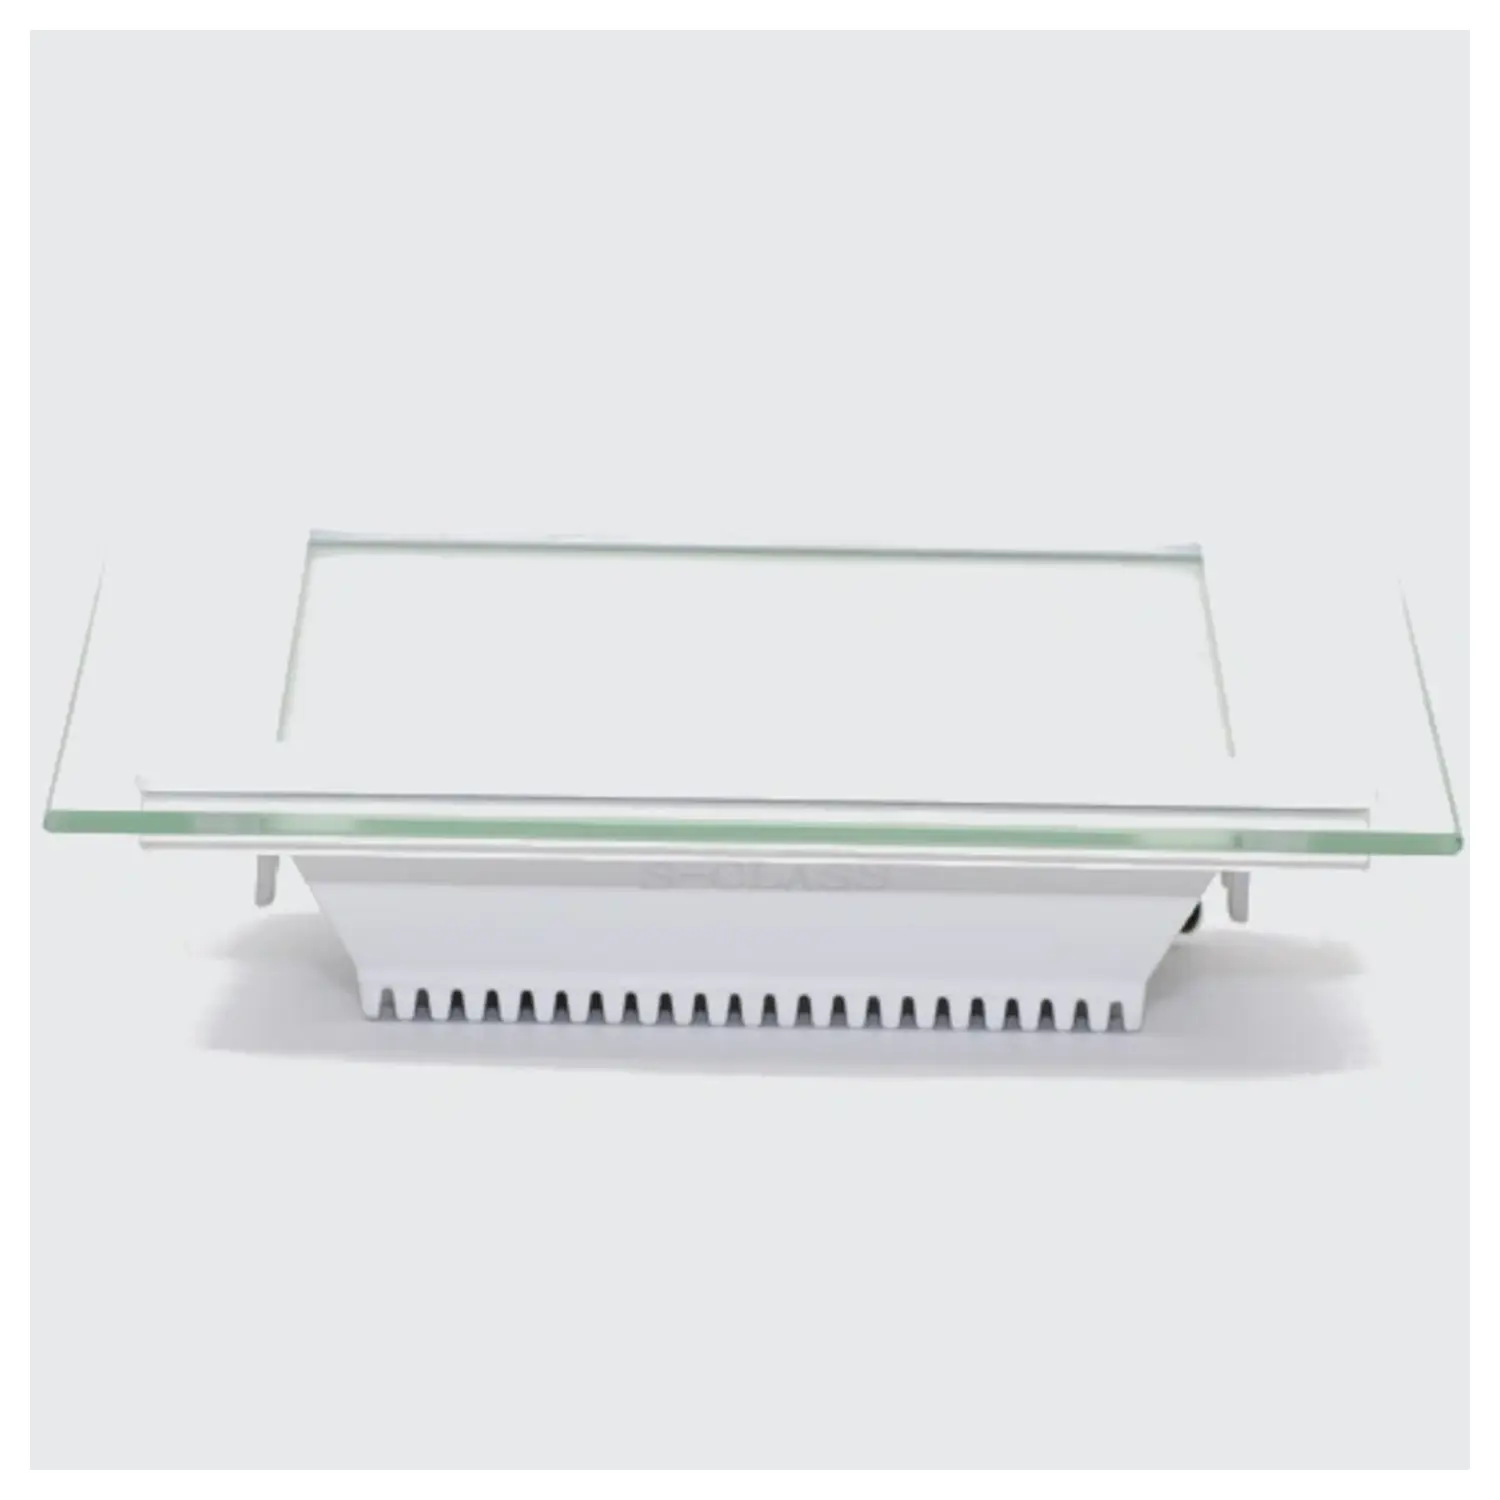 immagine mini pannel incasso cornice vetro quadrato IP20 fisso CE bianco caldo bianco 6 watt 220-240 volt 120° tec 622877